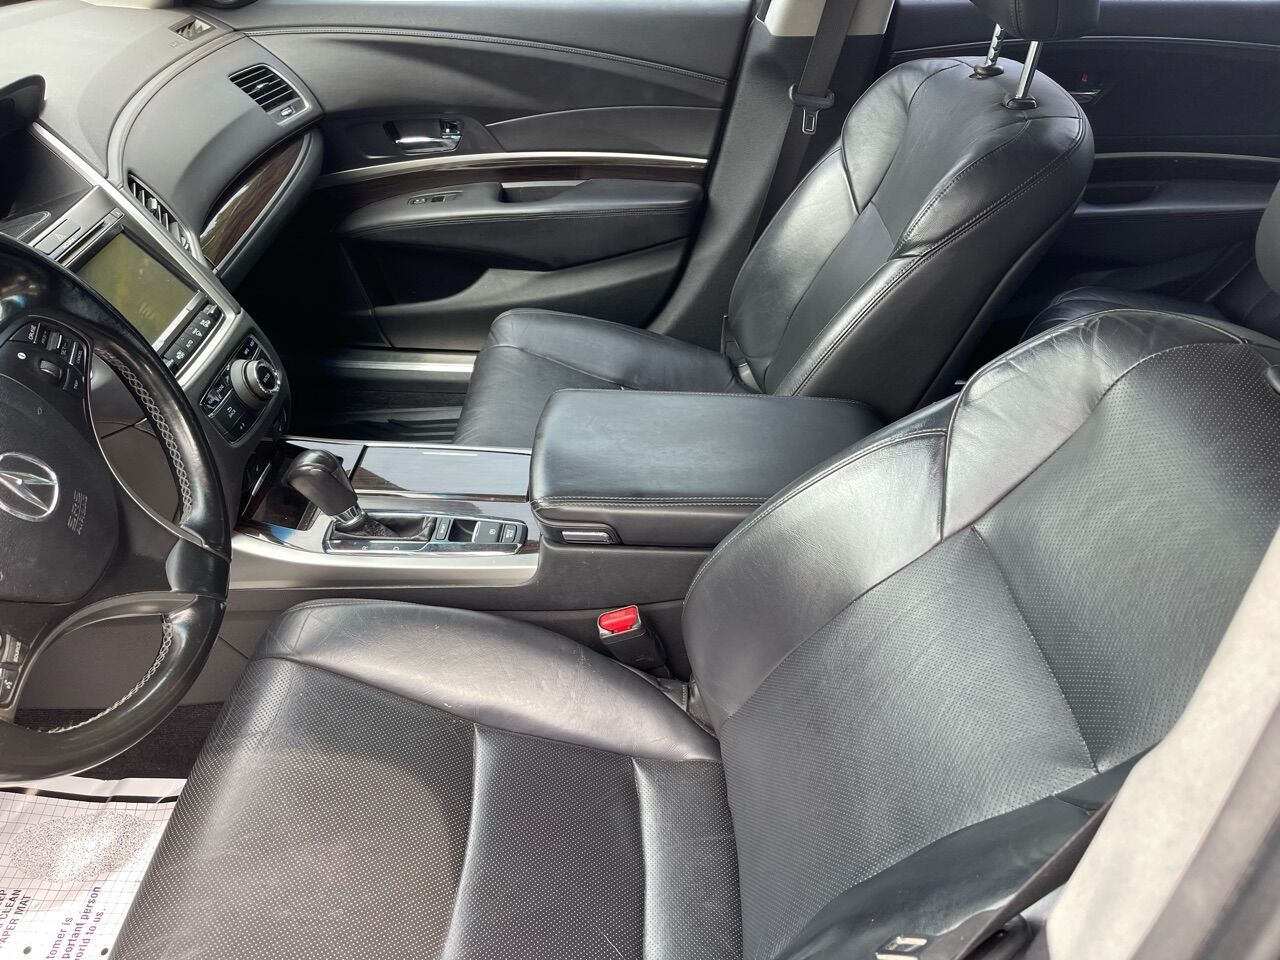 2015 ACURA RLX Sedan - $16,995